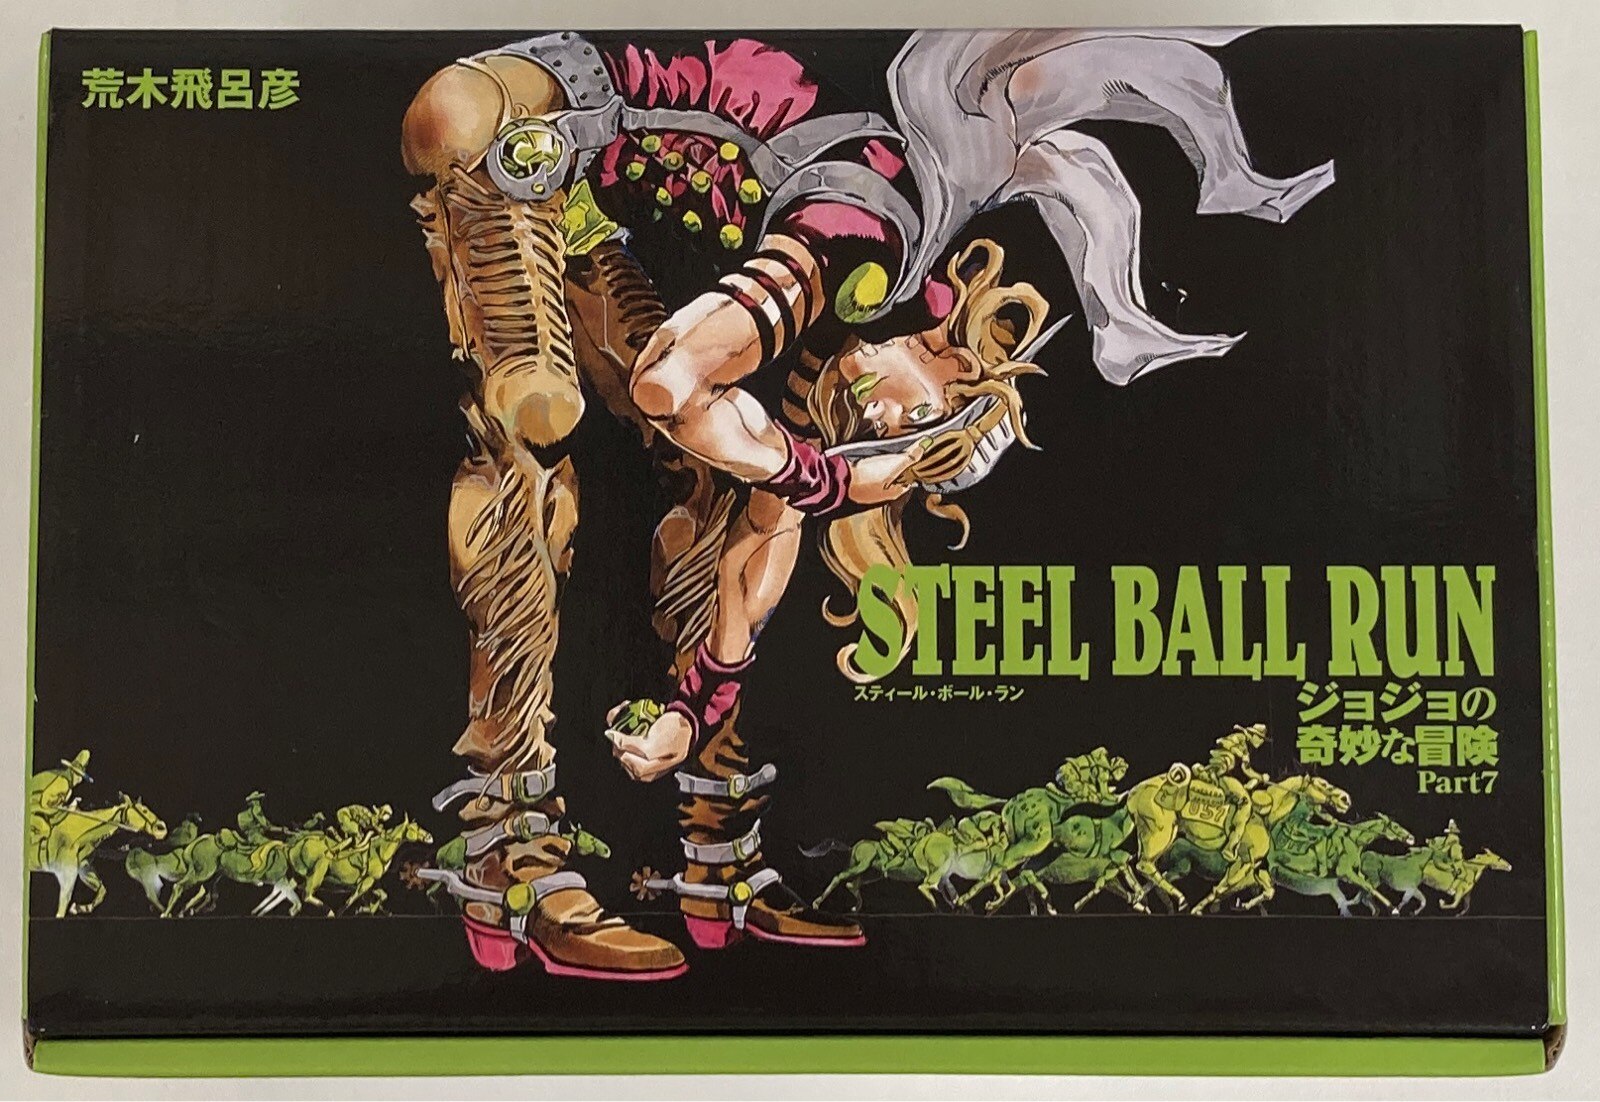 集英社 集英社文庫コミック版 荒木飛呂彦 Steel Ball Run ジョジョの奇妙な冒険part7 文庫版 Box全16巻 Boxセット まんだらけ Mandarake